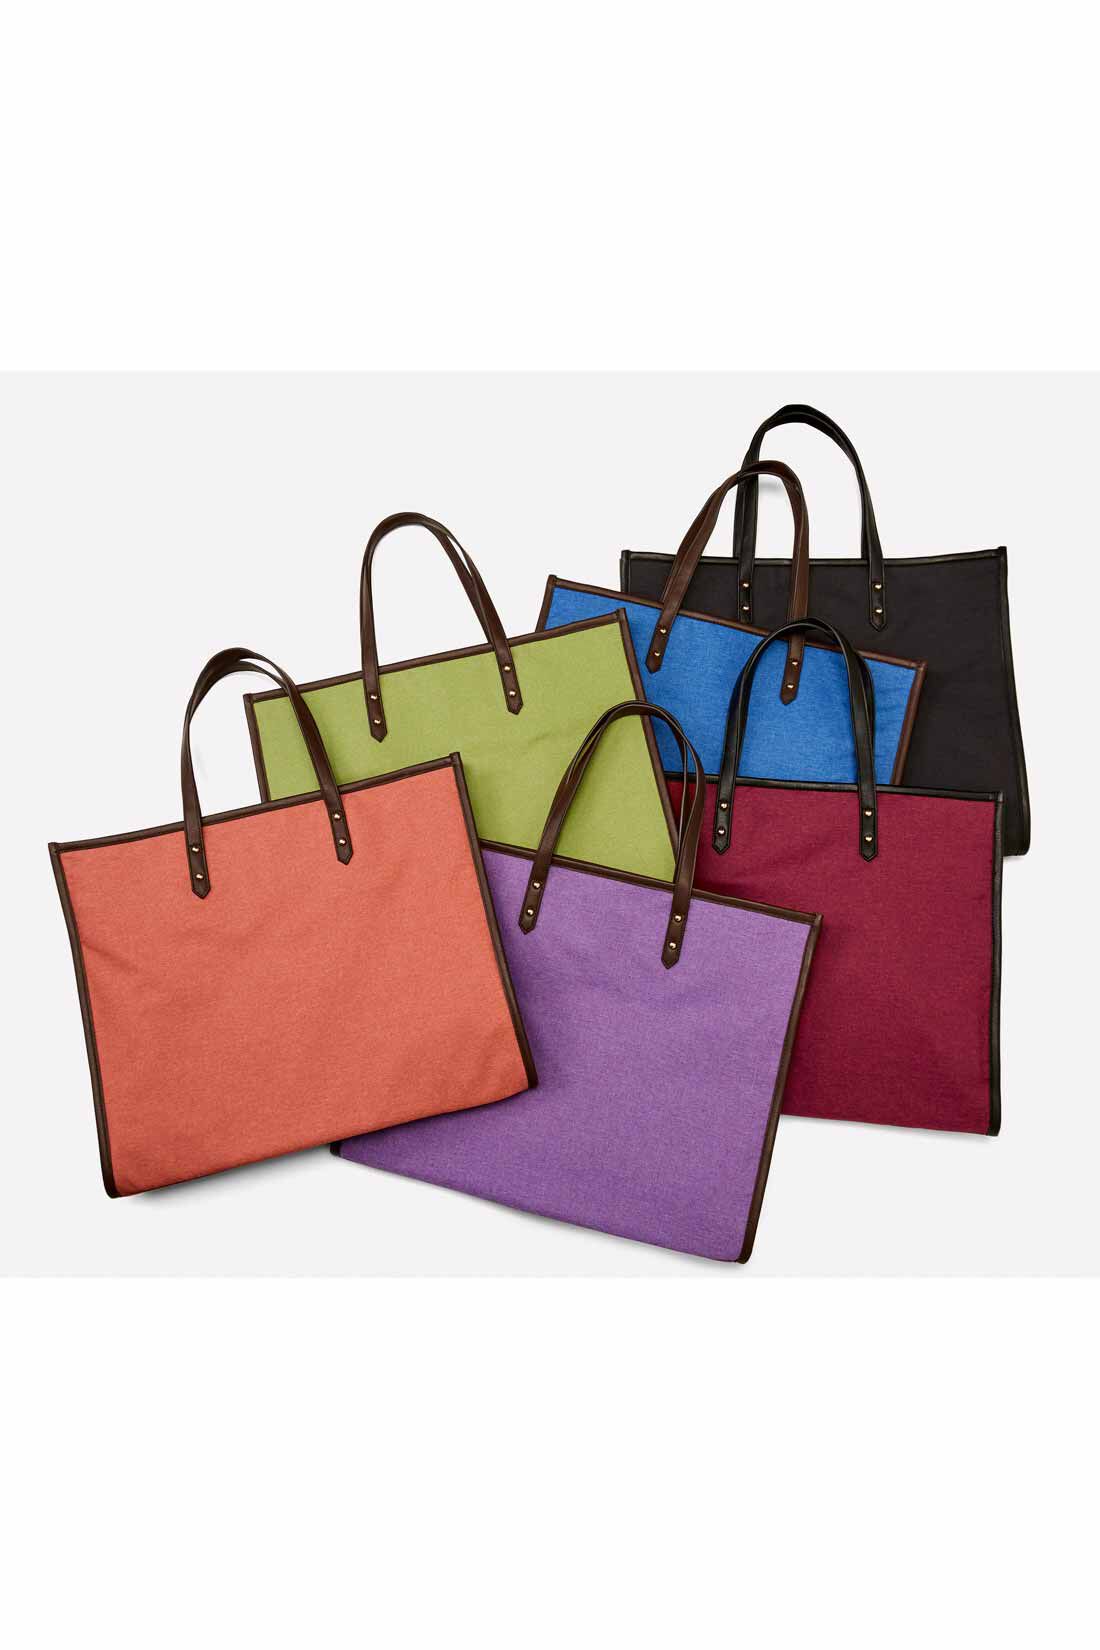 OSYAIRO|OSYAIRO ジャンボうちわが入るパイピングトートバッグ〈パープル〉|カラーは6色。あなたの推しカラーで選んでくださいね。